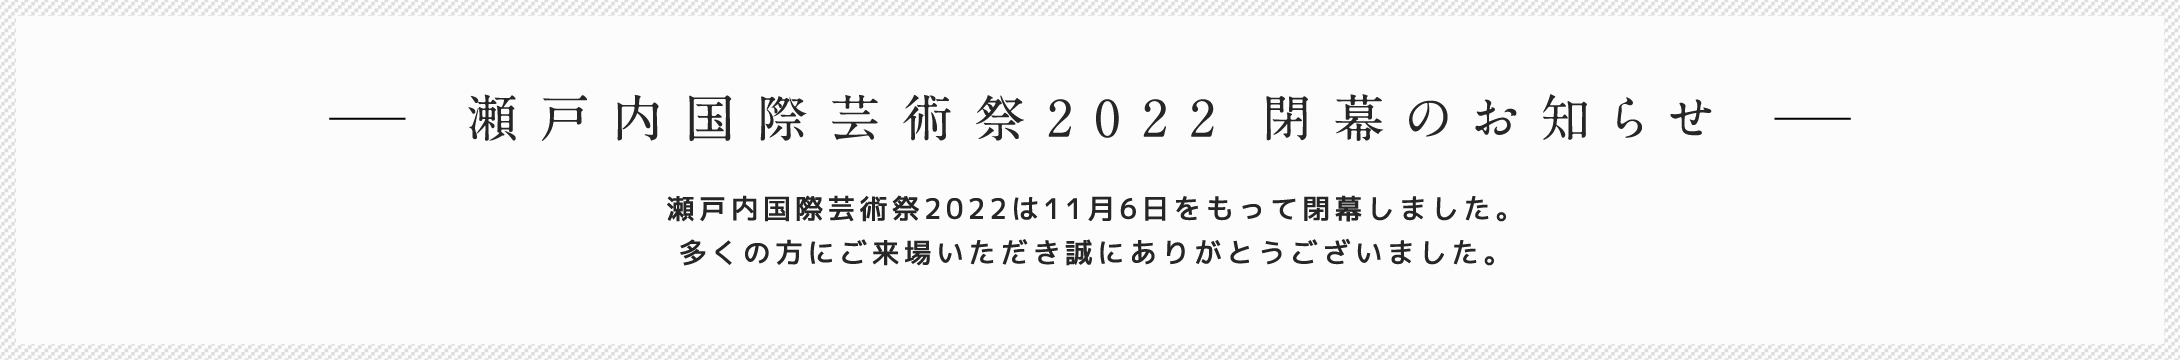 瀬戸内国際芸術祭2022 閉幕のお知らせ 瀬戸内国際芸術祭2022は11月6日をもって閉幕しました。多くの方にご来場いただき誠にありがとうございました。